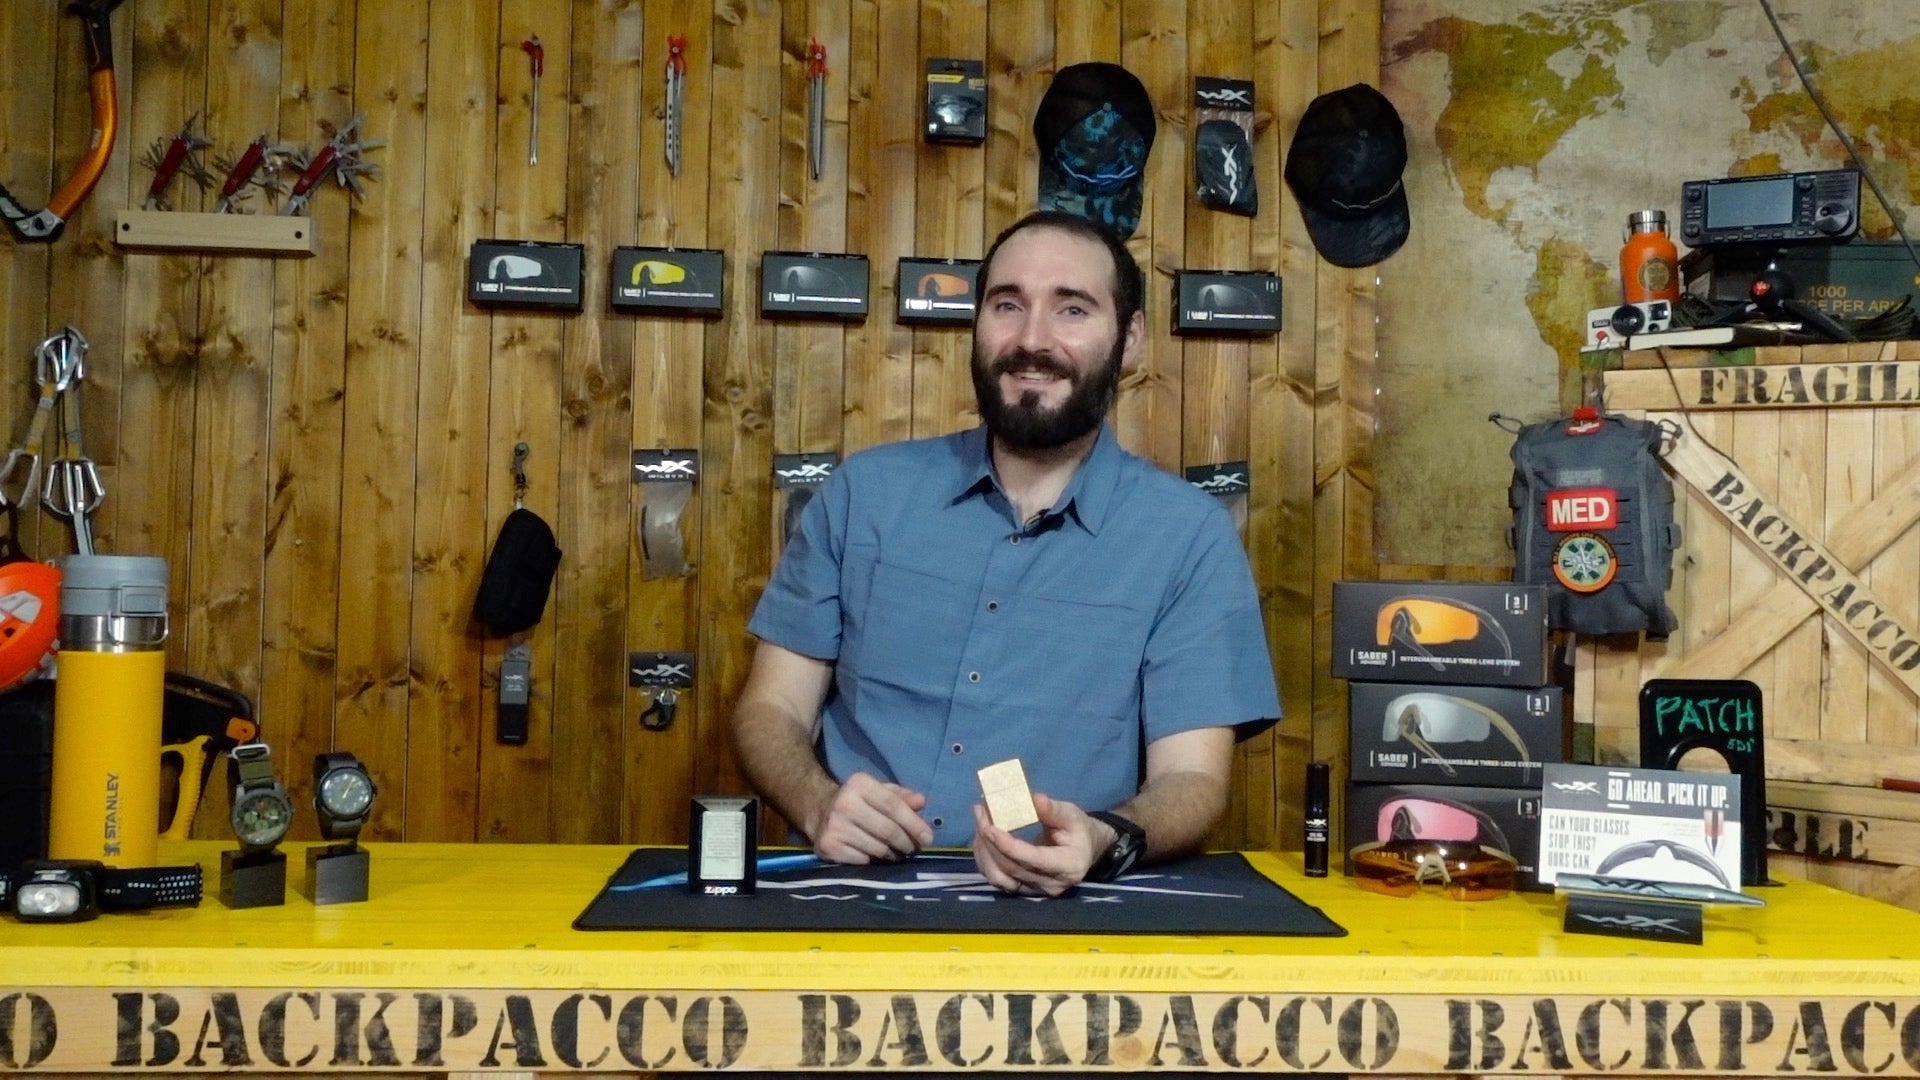 Paolo di Backpacco spiega lo Zippo Tumbled Brass